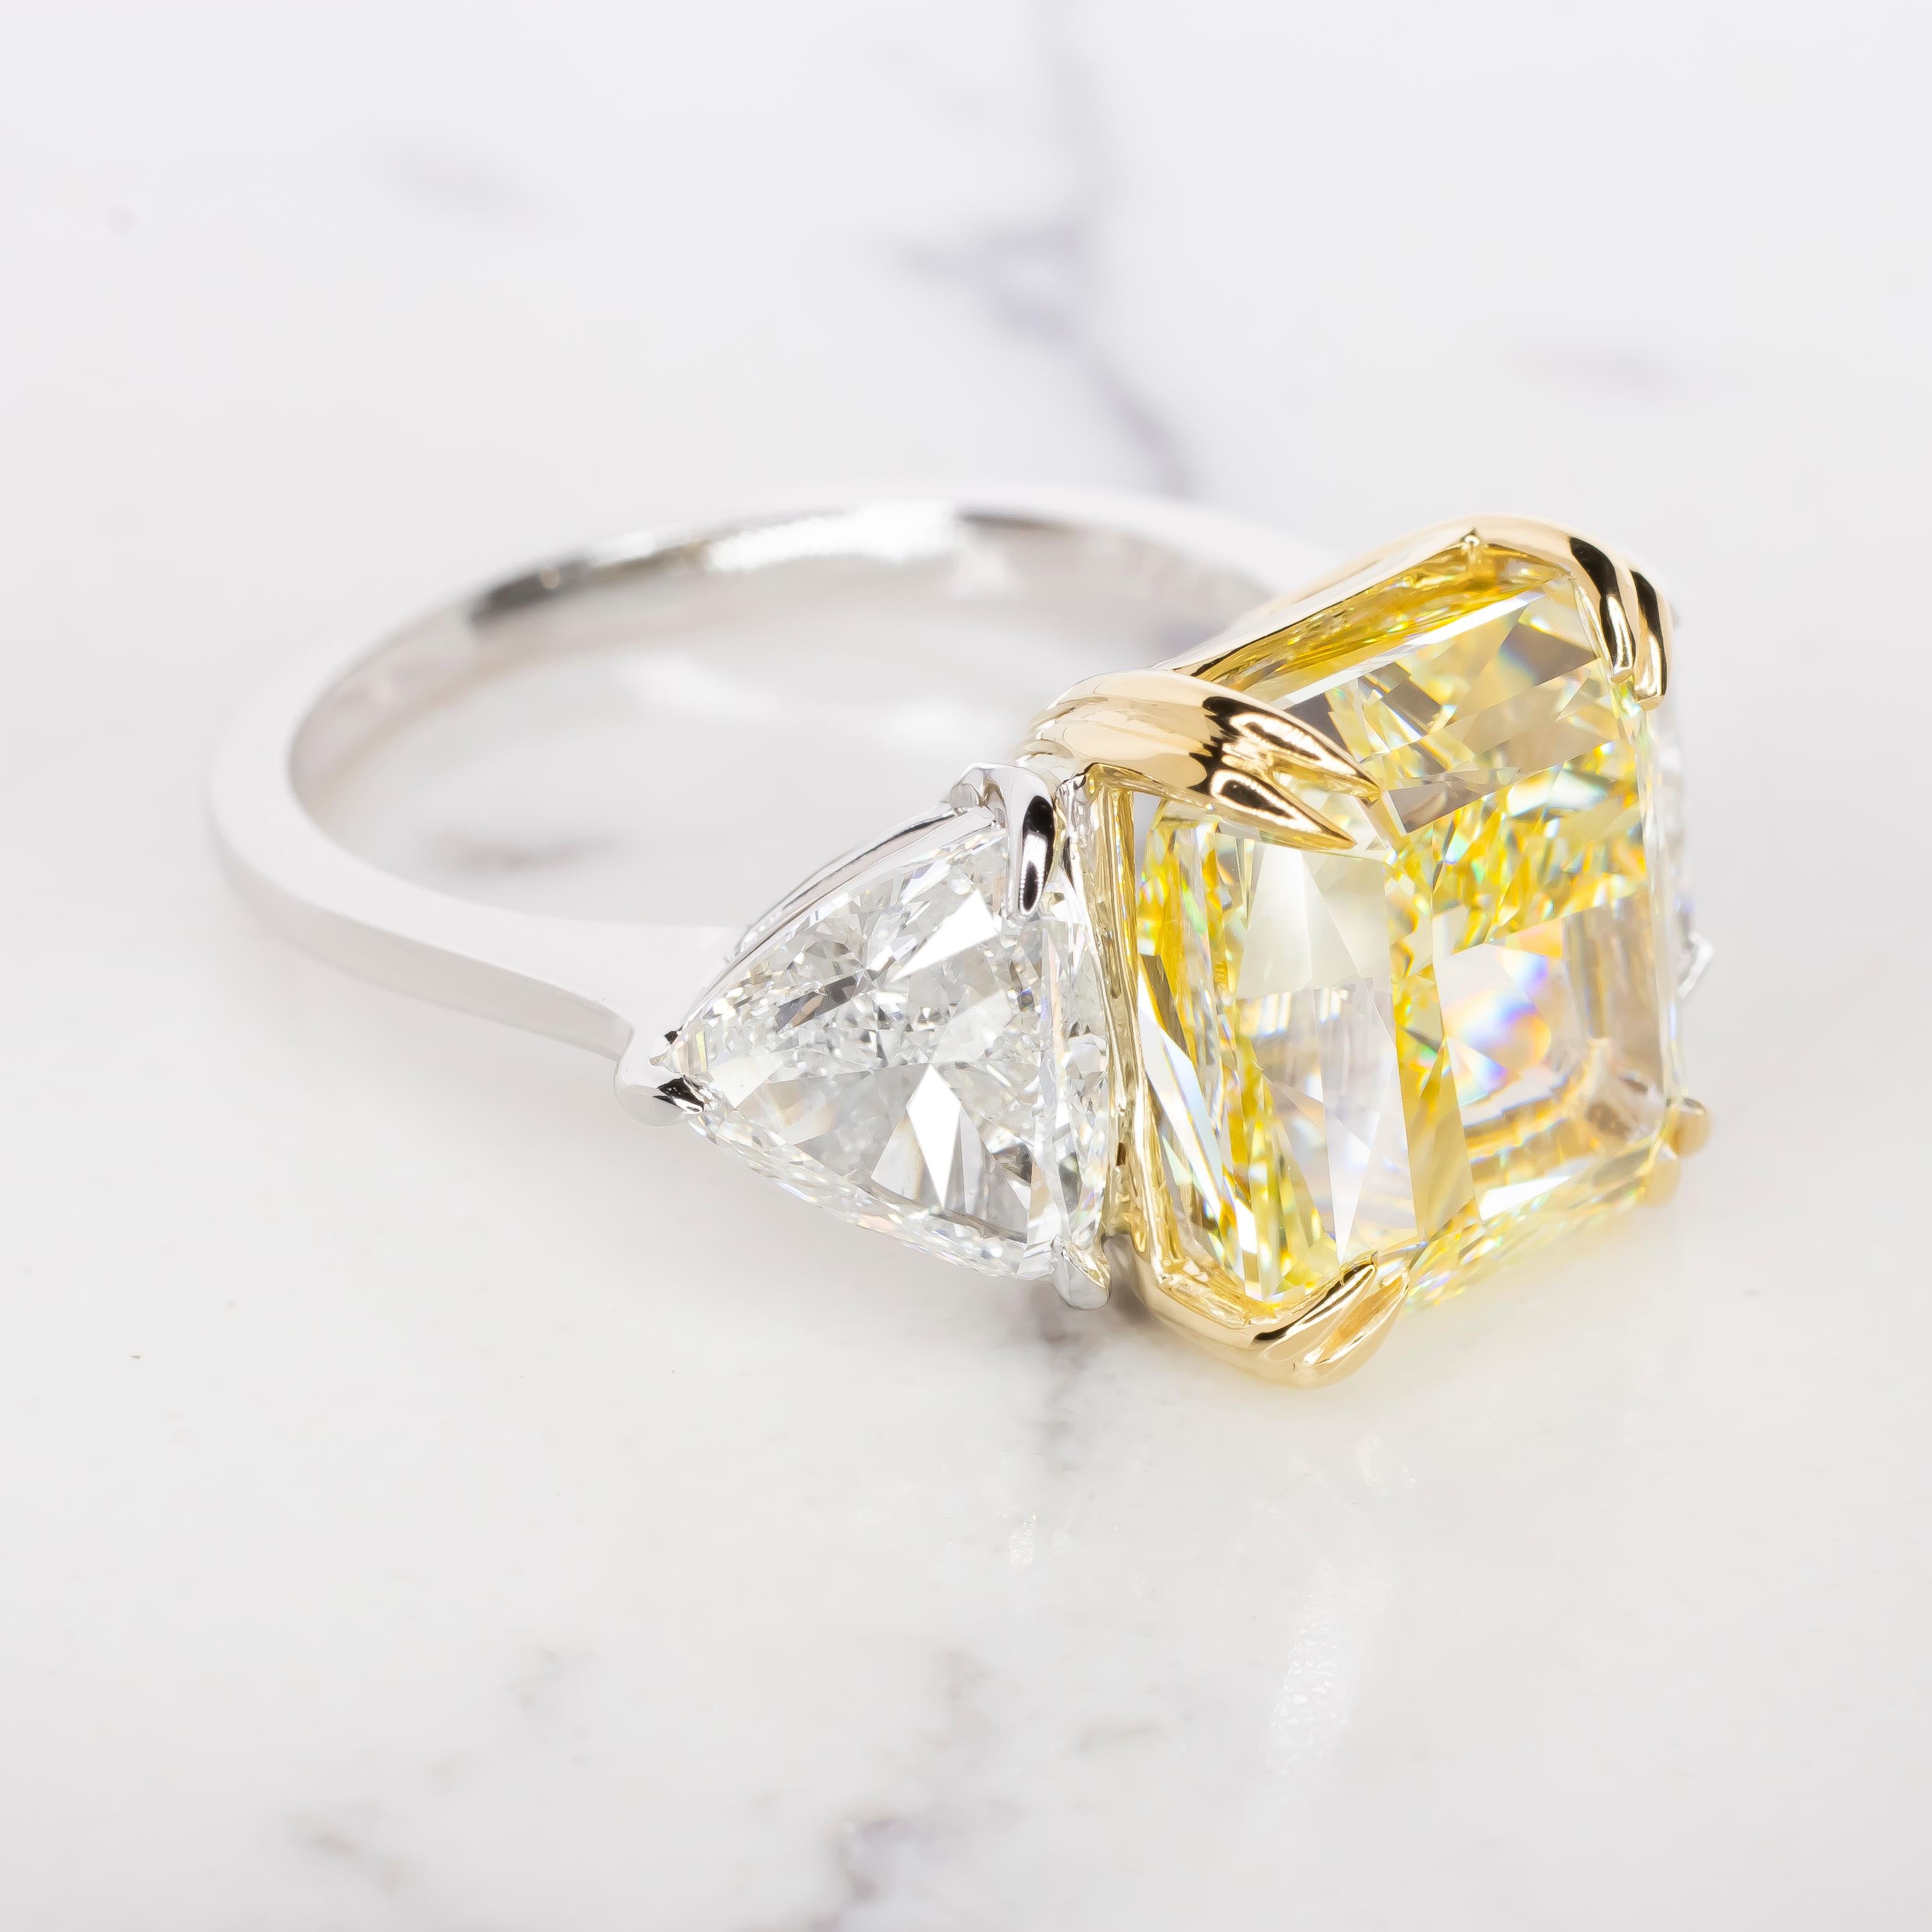 Wir präsentieren ein Meisterwerk von unvergleichlicher Schönheit und Prestige: die 8 Karat  fancy gelb VVS2 Klarheit GIA zertifiziert Diamantring.

Stellen Sie sich einen strahlenden Glanz vor, der die Aufmerksamkeit auf sich zieht und der von dem